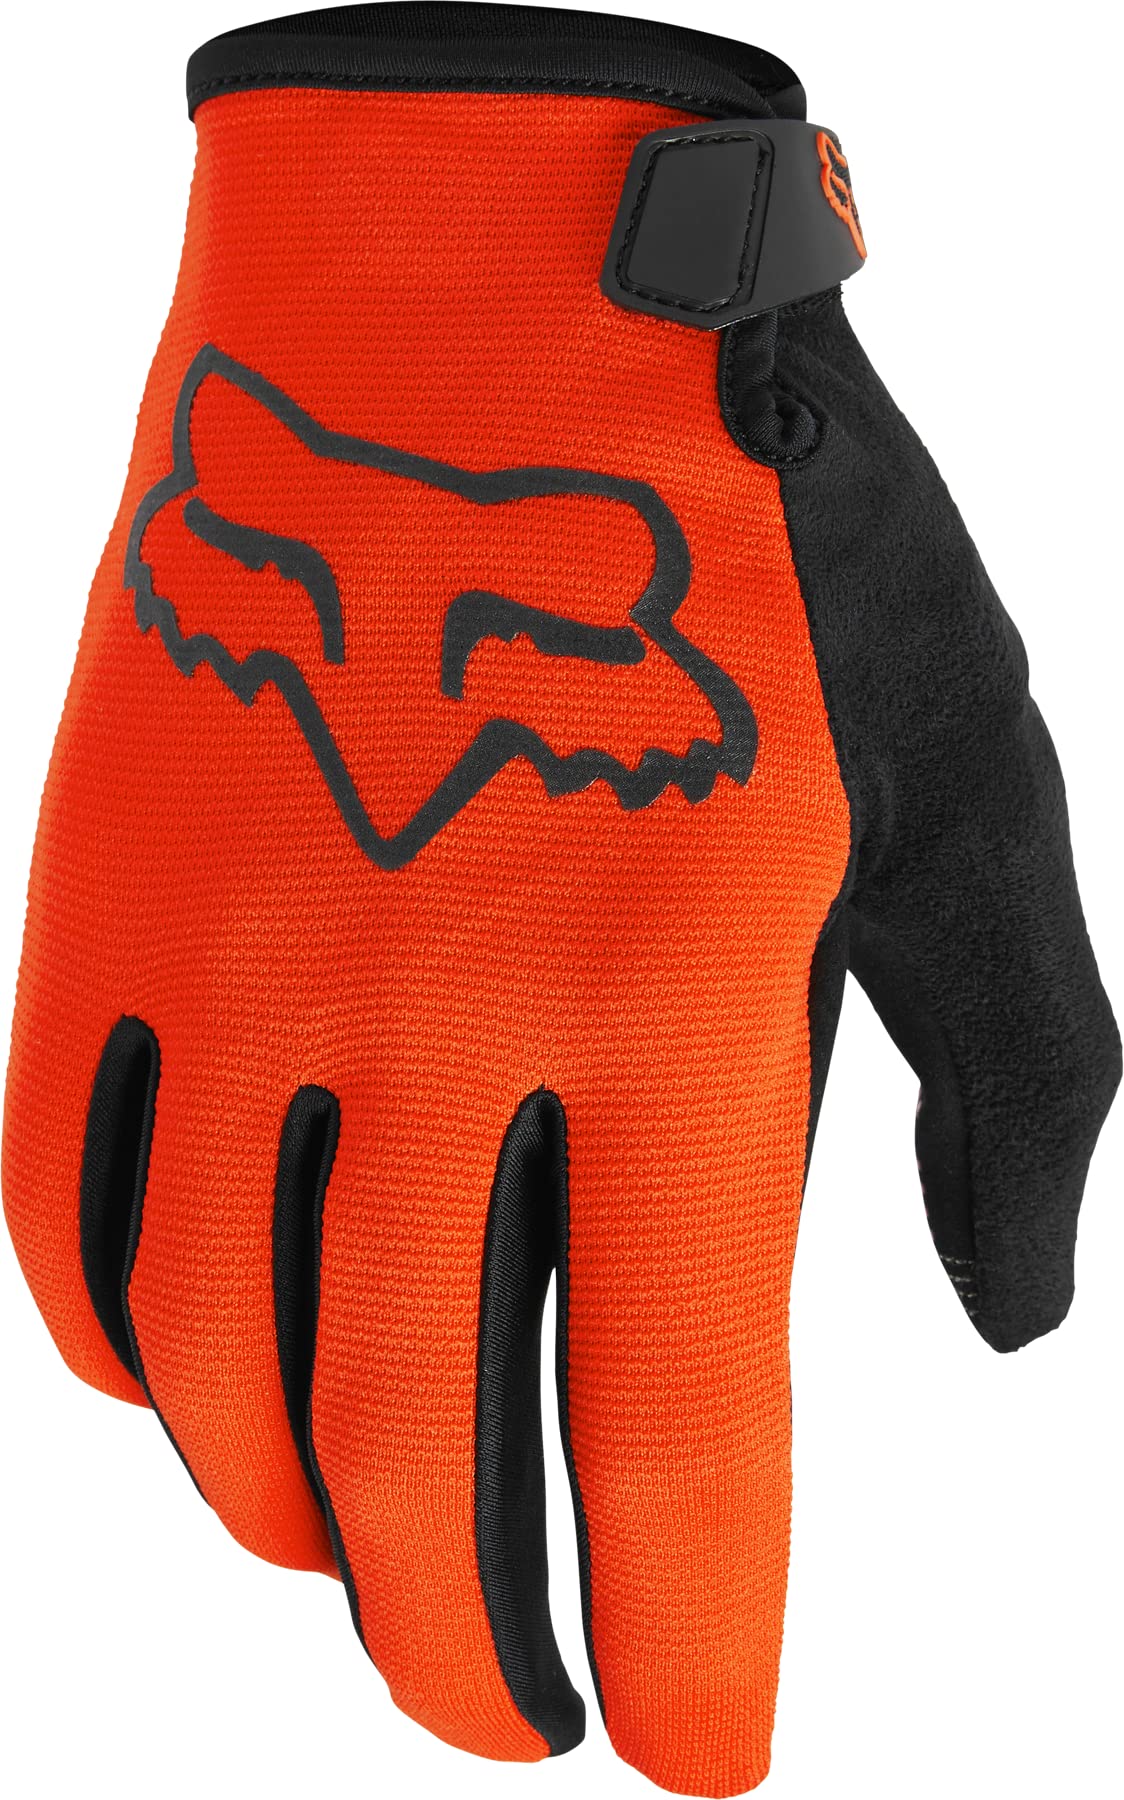 Ranger Glove Fluo Orange von Fox